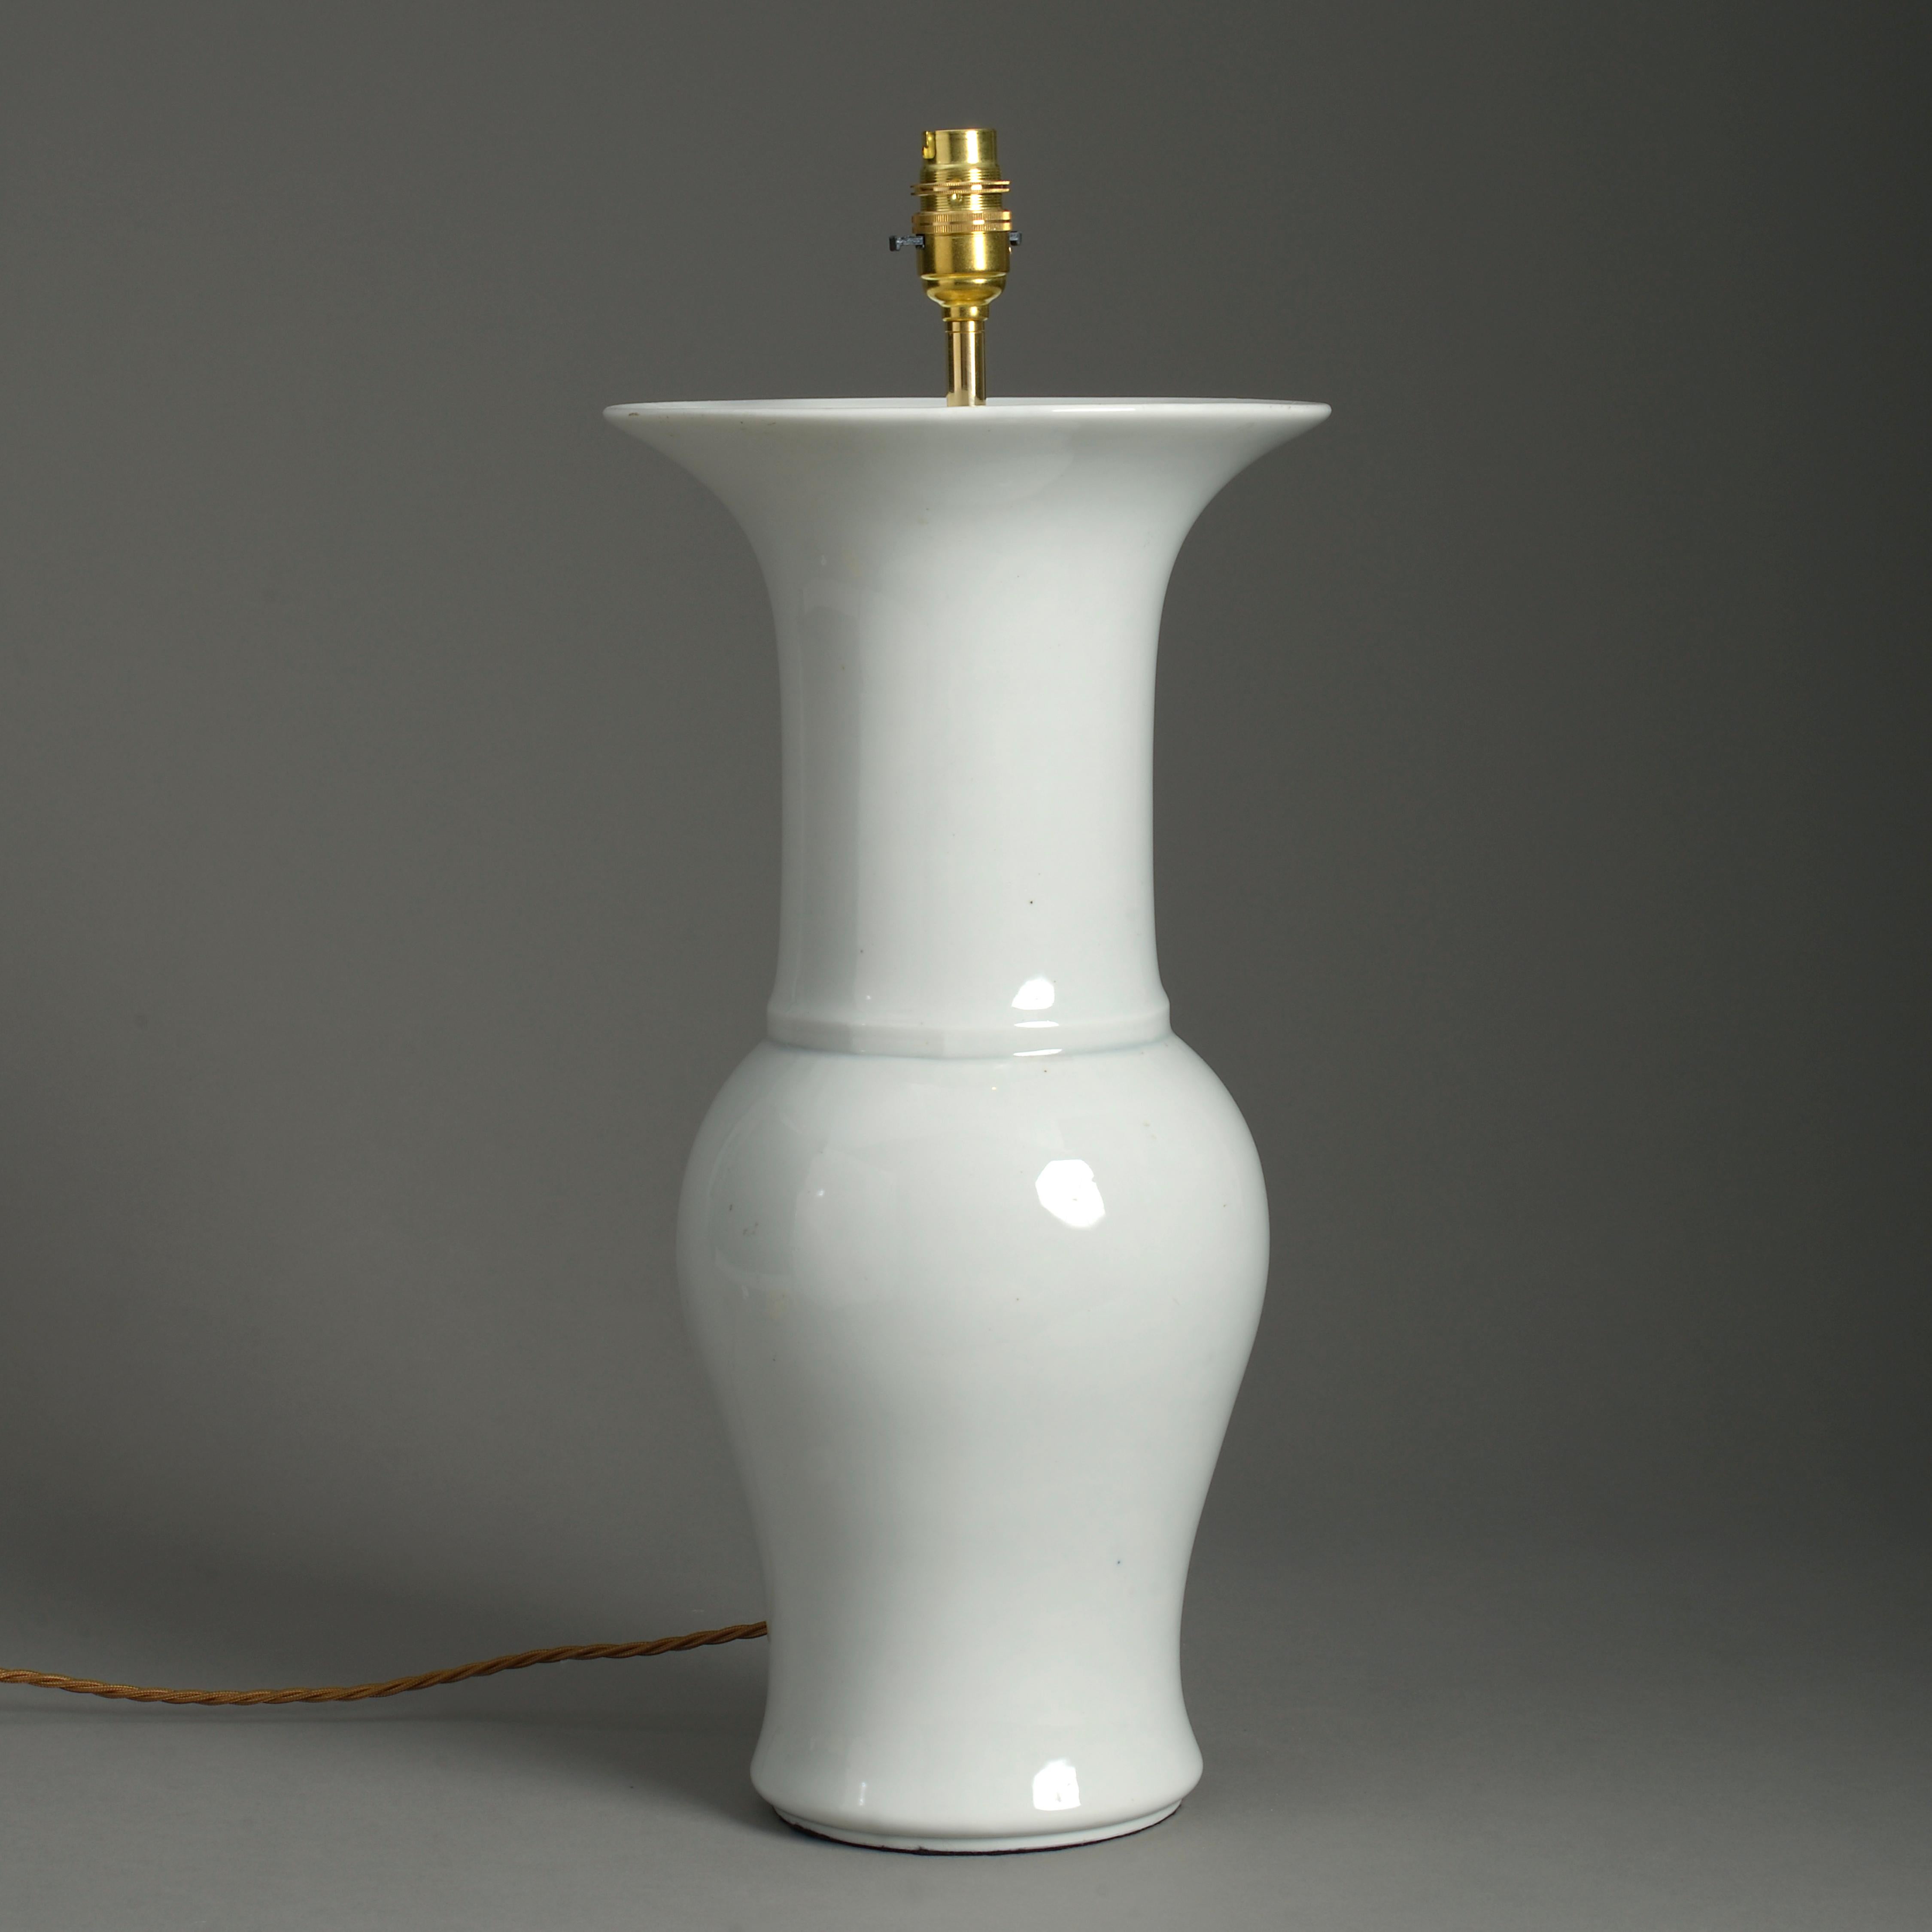 Un vase à manche en porcelaine blanche du début du 20e siècle, le col en trompette au-dessus d'un corps balustre. Maintenant, elle est câblée comme une lampe de table.

Les dimensions se réfèrent à la hauteur du vase et de la base